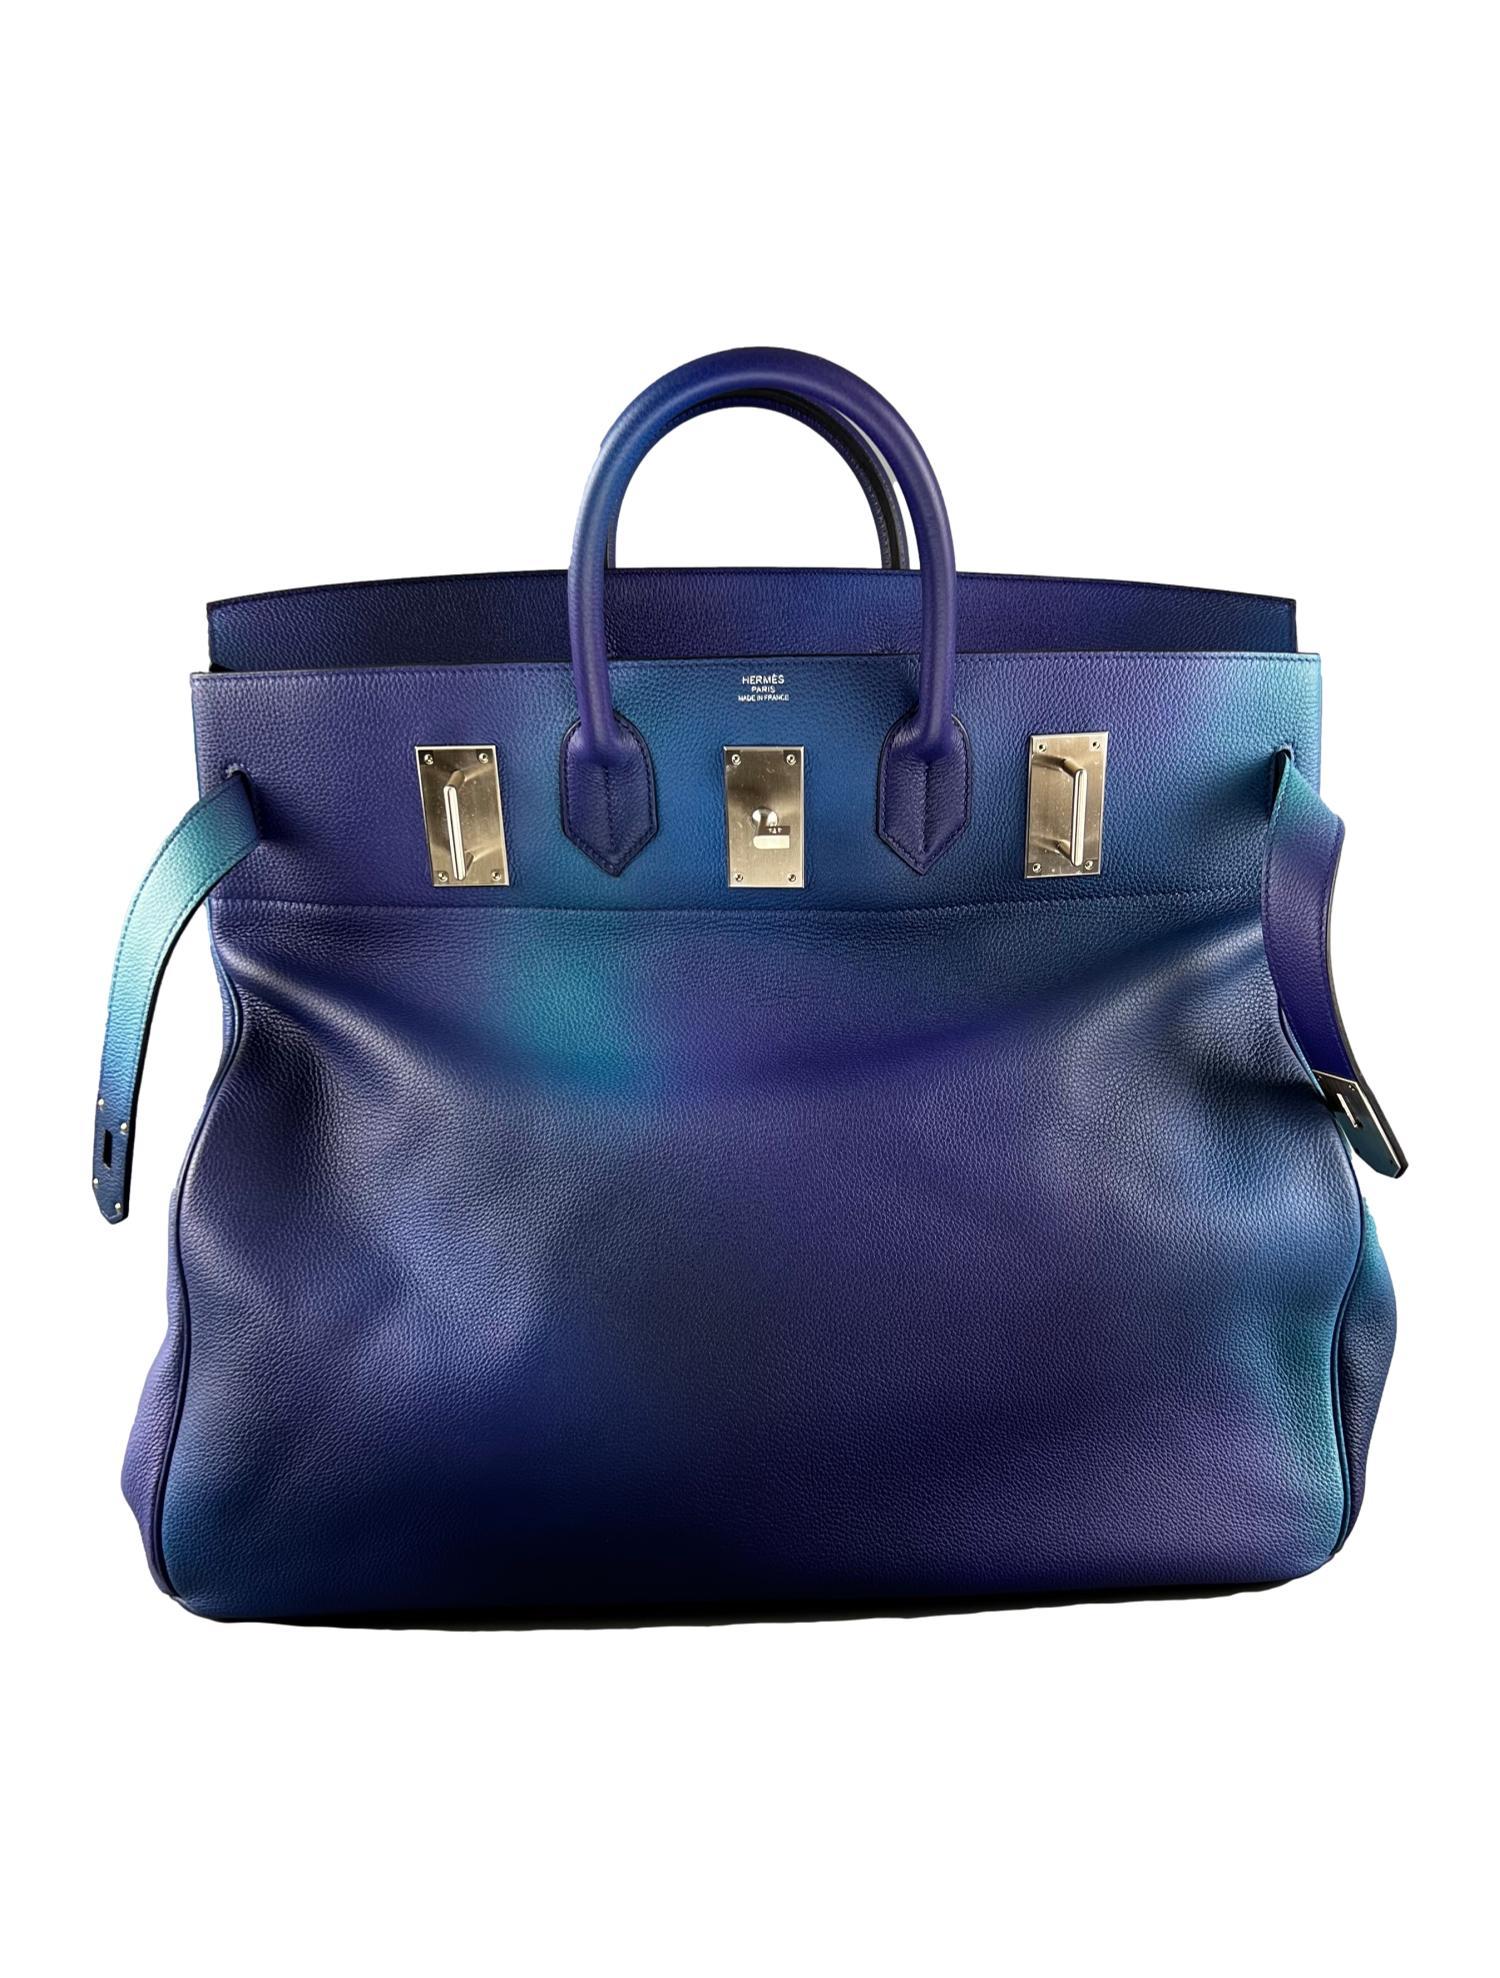 Women's or Men's Hermès SS19 Ombré Haut à Courroies Cosmos HAC 50 Nuit Violet Limited Edition Bag